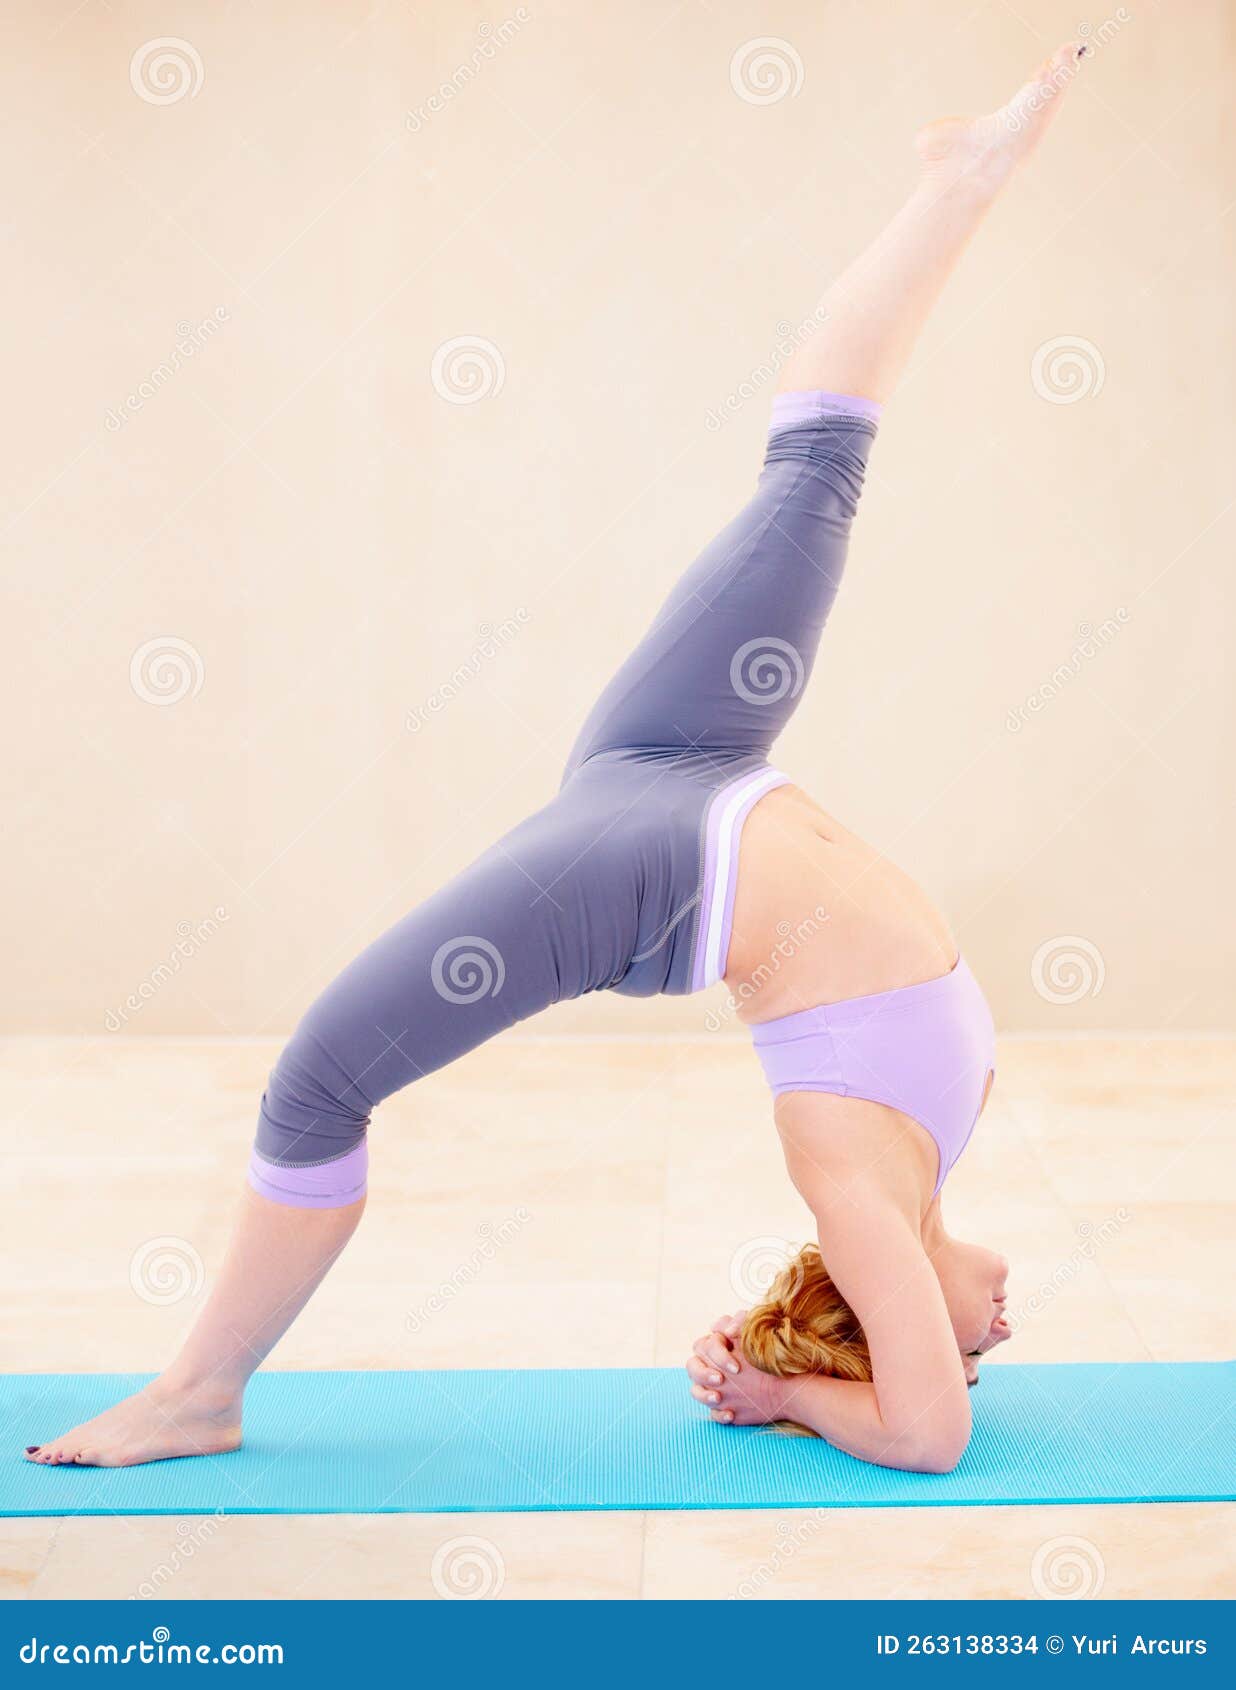 Chaque Muscle Travaillant Parfaitement Ensemble. Femme Flexible En Position  Yoga En Faisant Du Yoga Toute Seule. Photo stock - Image du ajustement,  orienté: 263138334